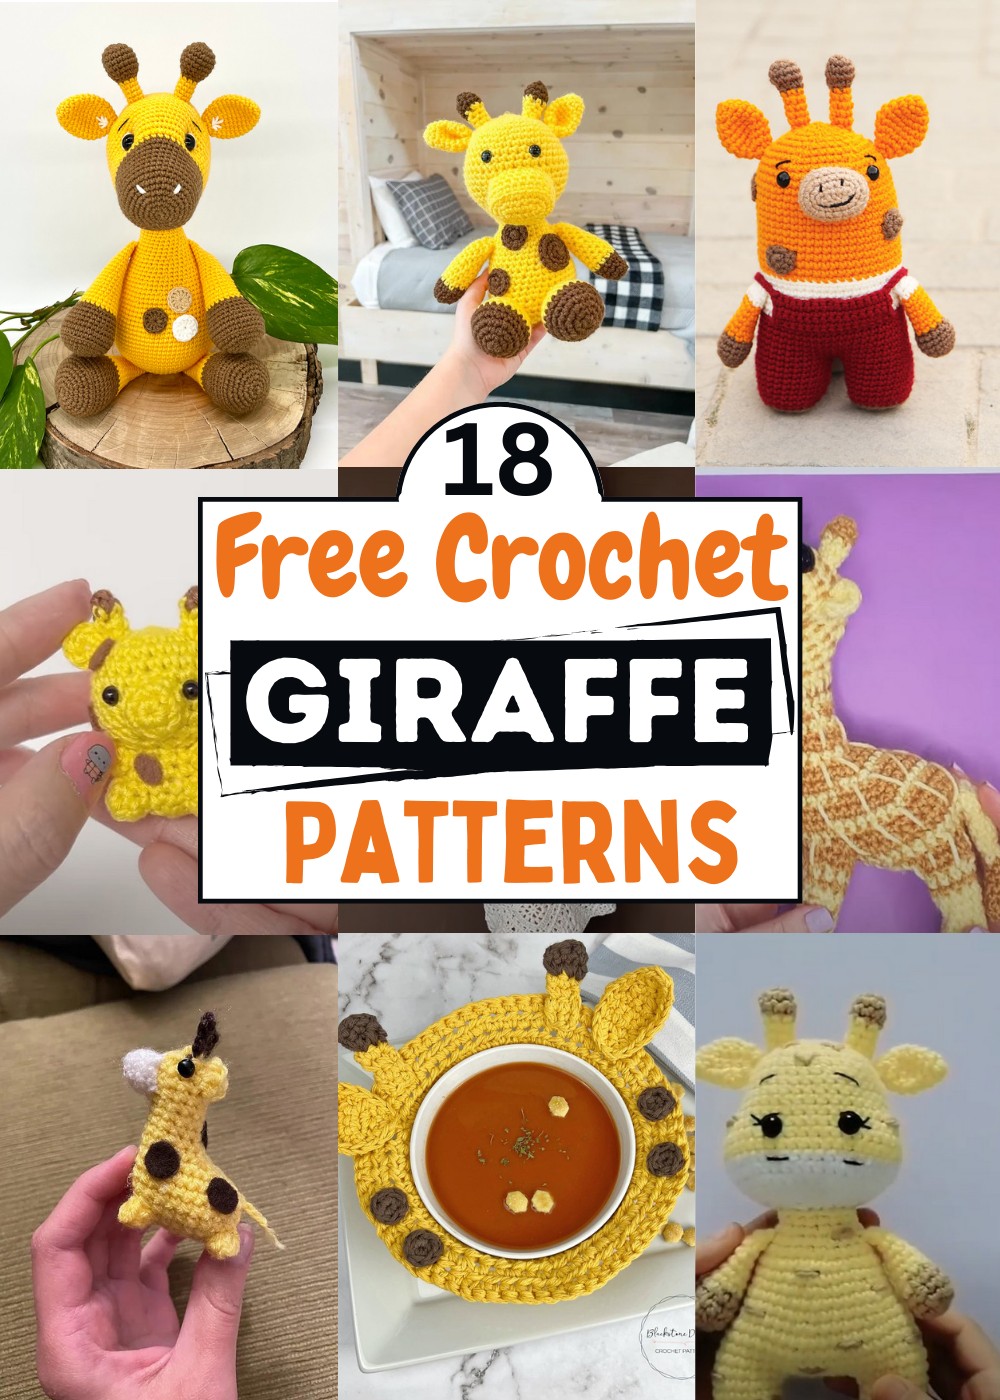 Crochet Giraffe Patterns